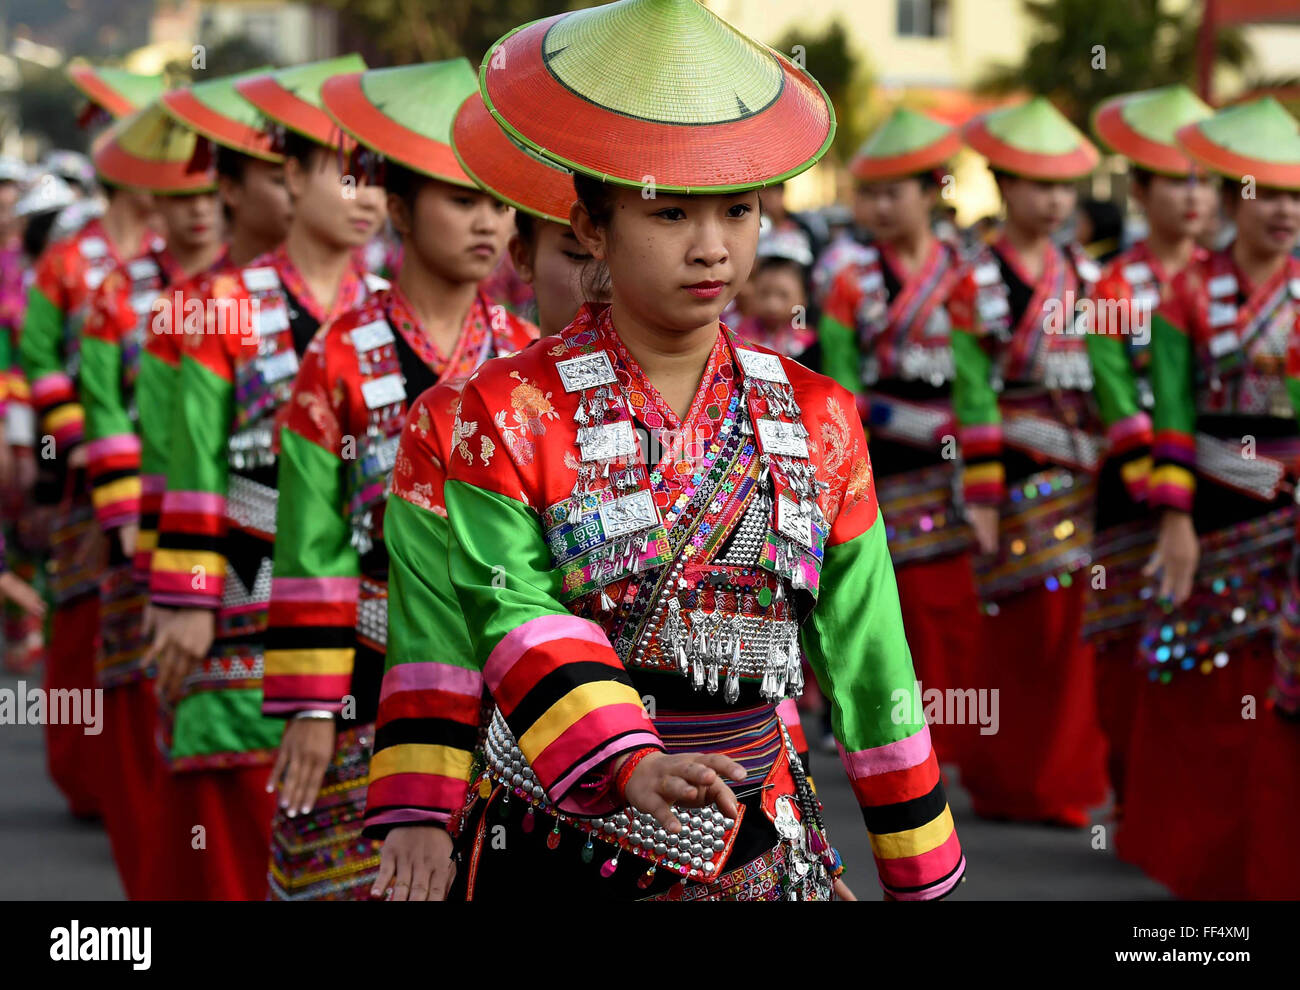 Xinping, la province chinoise du Yunnan. Feb 11, 2016. Les gens de l'ethnie Dai Huayao participent à un défilé pour célébrer la traditionnelle "Huajie' festival dans Jiasa Yi-Dai Canton de Xinping comté autonome, le sud-ouest de la province chinoise du Yunnan, le 11 février 2016. Dai Huayao groupe ethnique, d'être nommé pour costume coloré décorations sur les gens de sa taille, est une succursale de Dai groupe ethnique. Credit : Lin Yiguang/Xinhua/Alamy Live News Banque D'Images